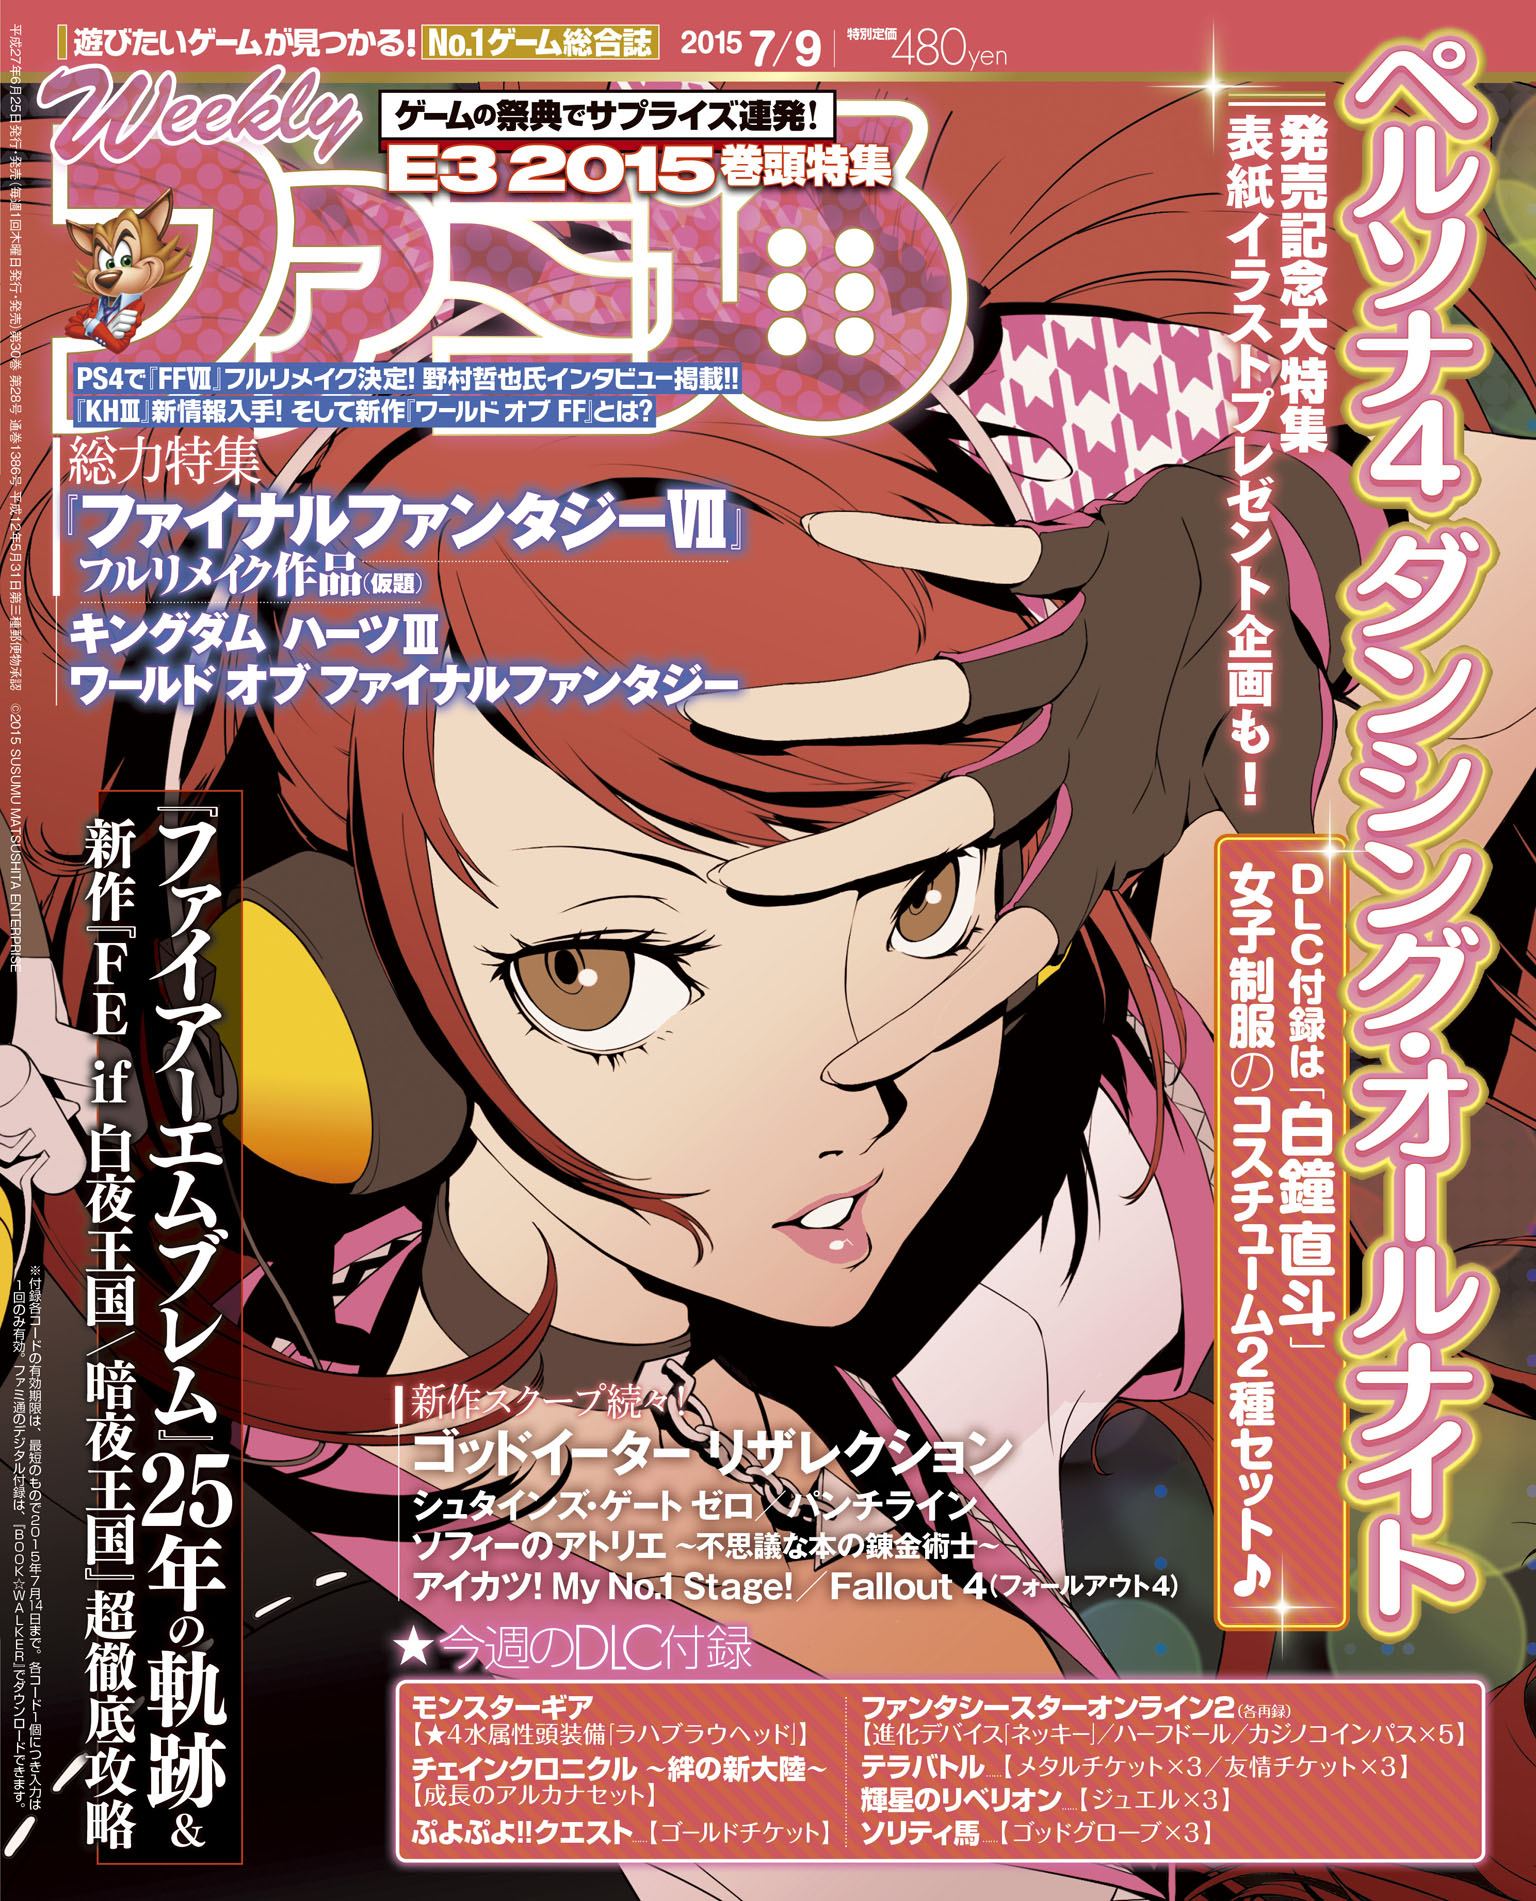 Weekly Famitsu No 1386 15 07 09